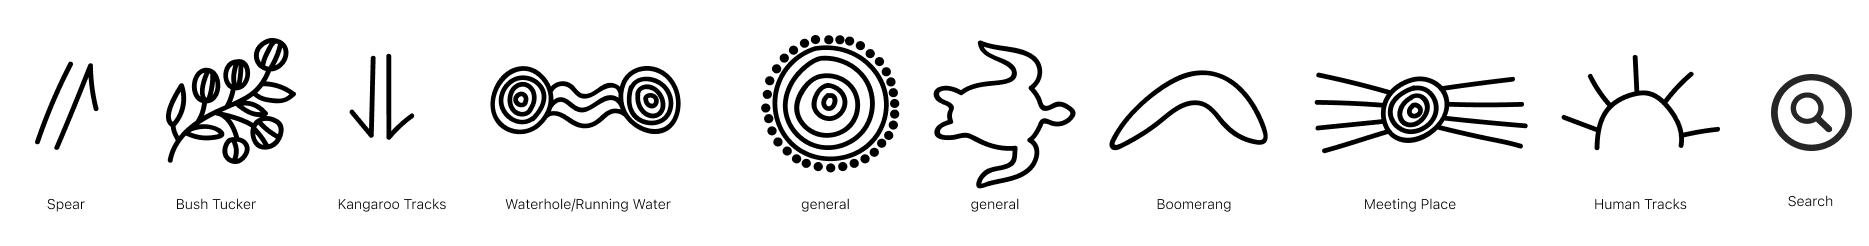 custom icongraphy based on indigenous symbols